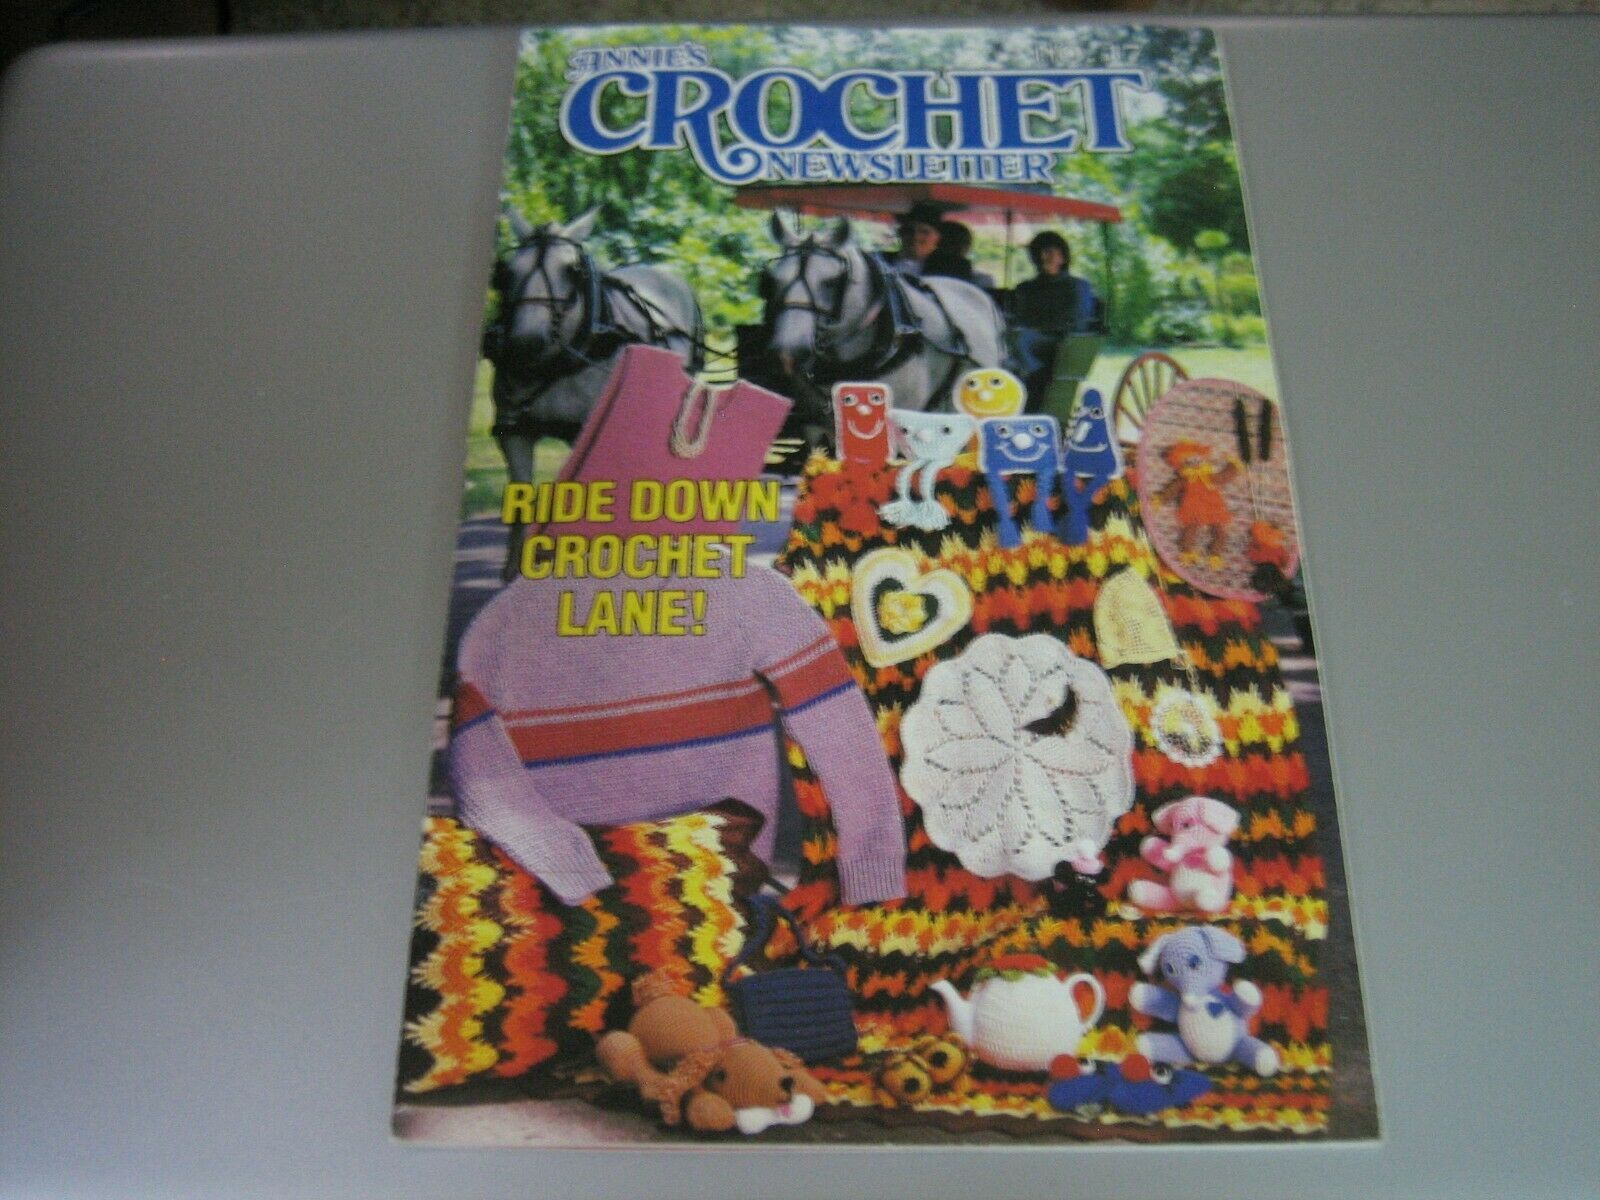 Annie's Crochet Newsletter - Ride Down Crochet Lane! - October 1985 - $9.78